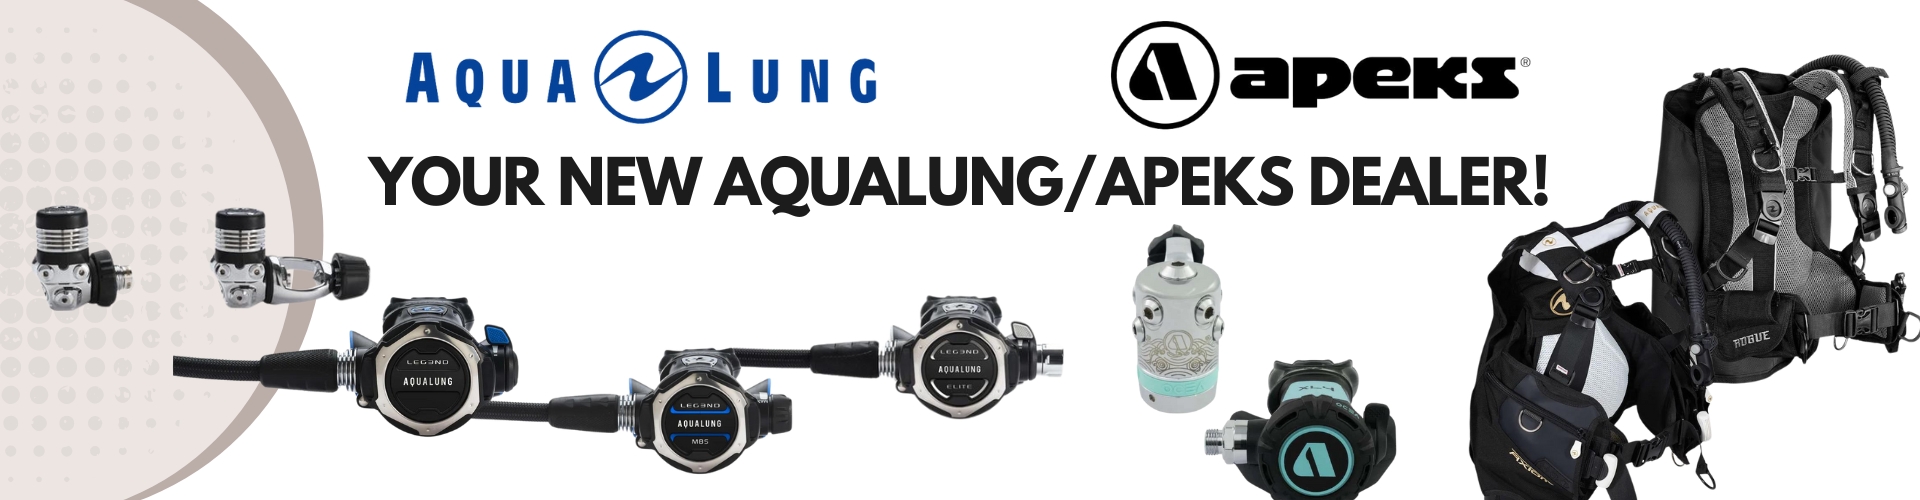 AquaLung/Apex dealer